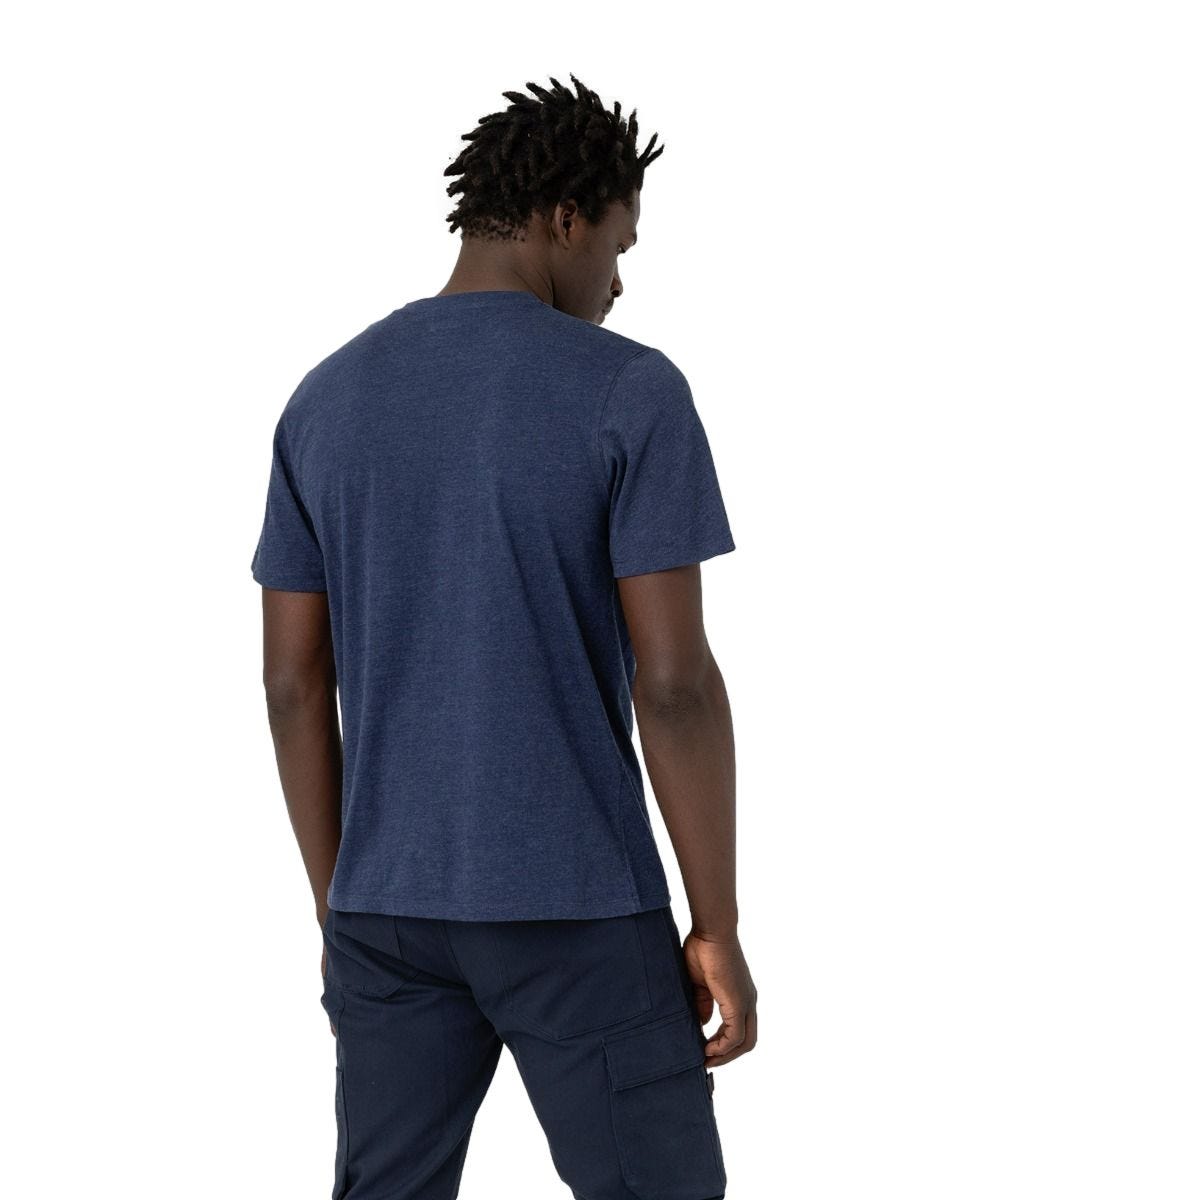 T-shirt à manches courtes pour homme Stanton bleu marine - Dickies - Taille XL 1